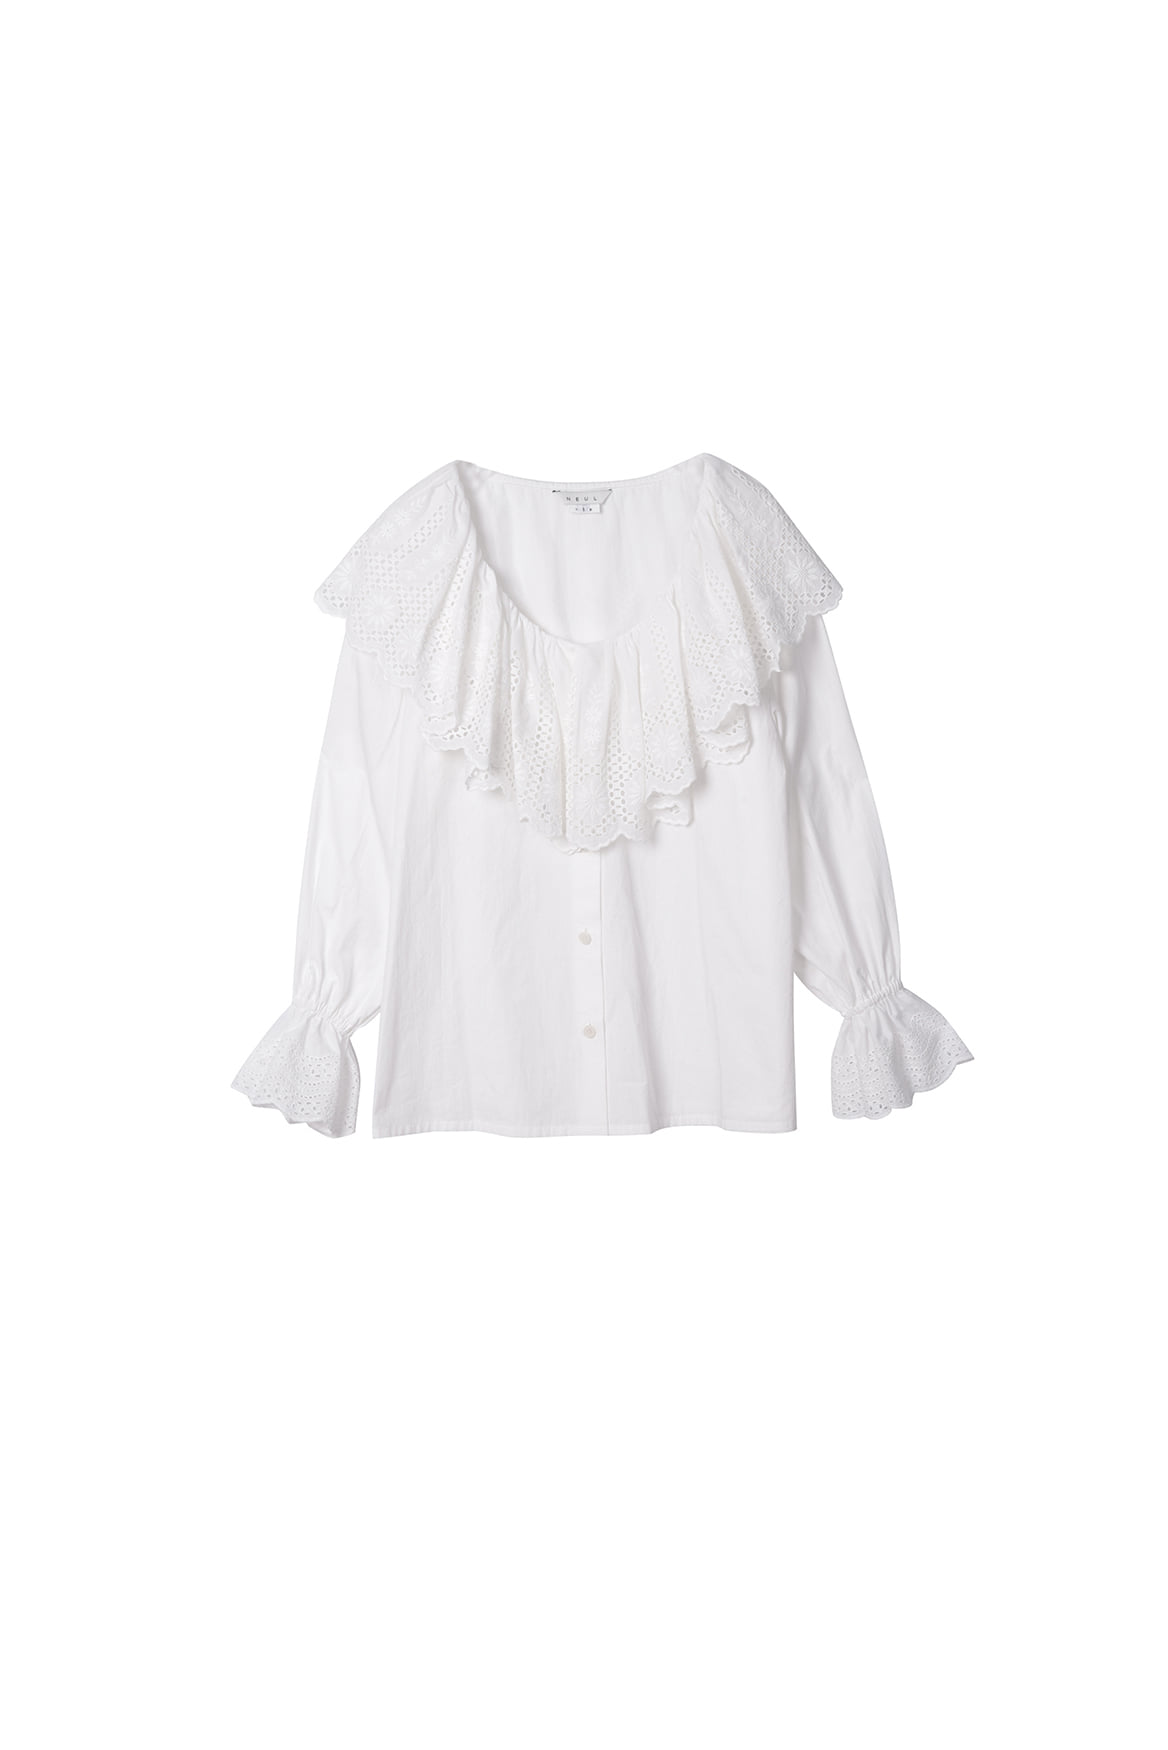 [리퍼브] Lace Ruffle Shirt